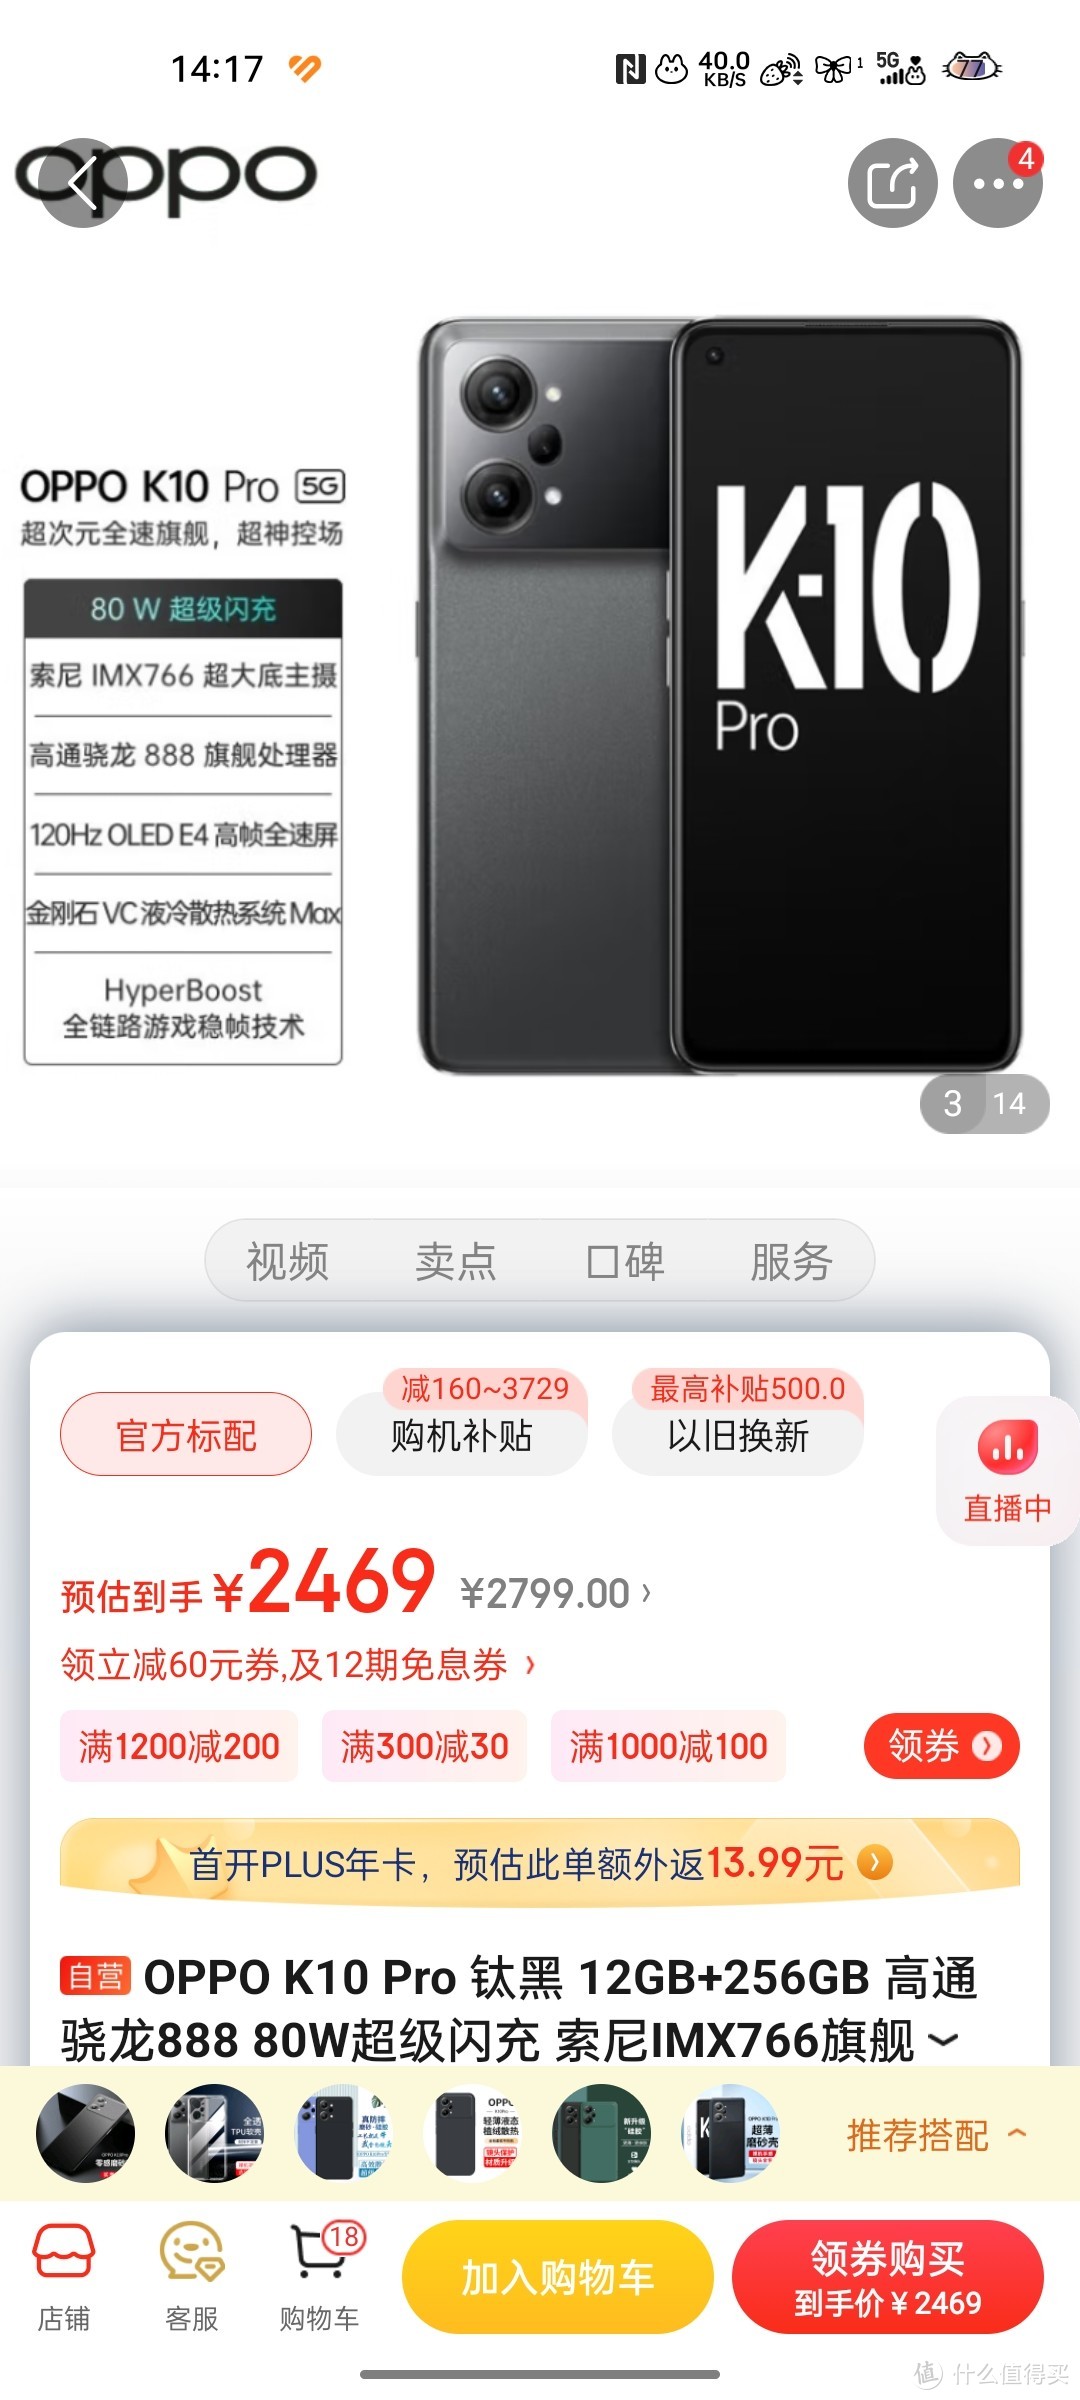 OPPO K10 Pro 钛黑 12GB+256GB 高通骁龙888 80W超级闪充 索尼IMX766旗舰传感器 OLED屏幕 5G手机